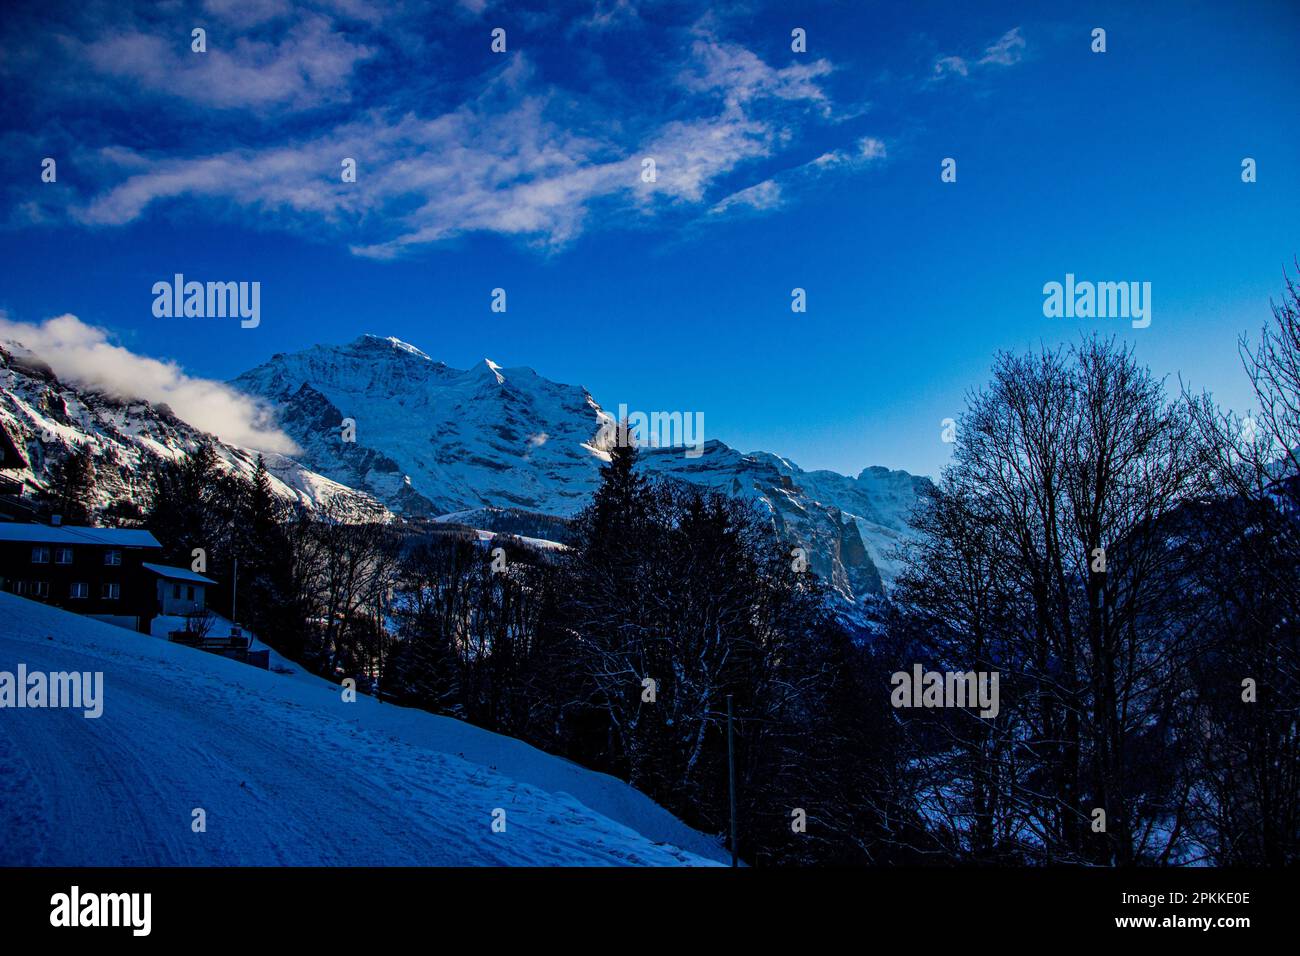 Belle journée ensoleillée dans les Alpes suisses enneigées, Wengen, Suisse Banque D'Images